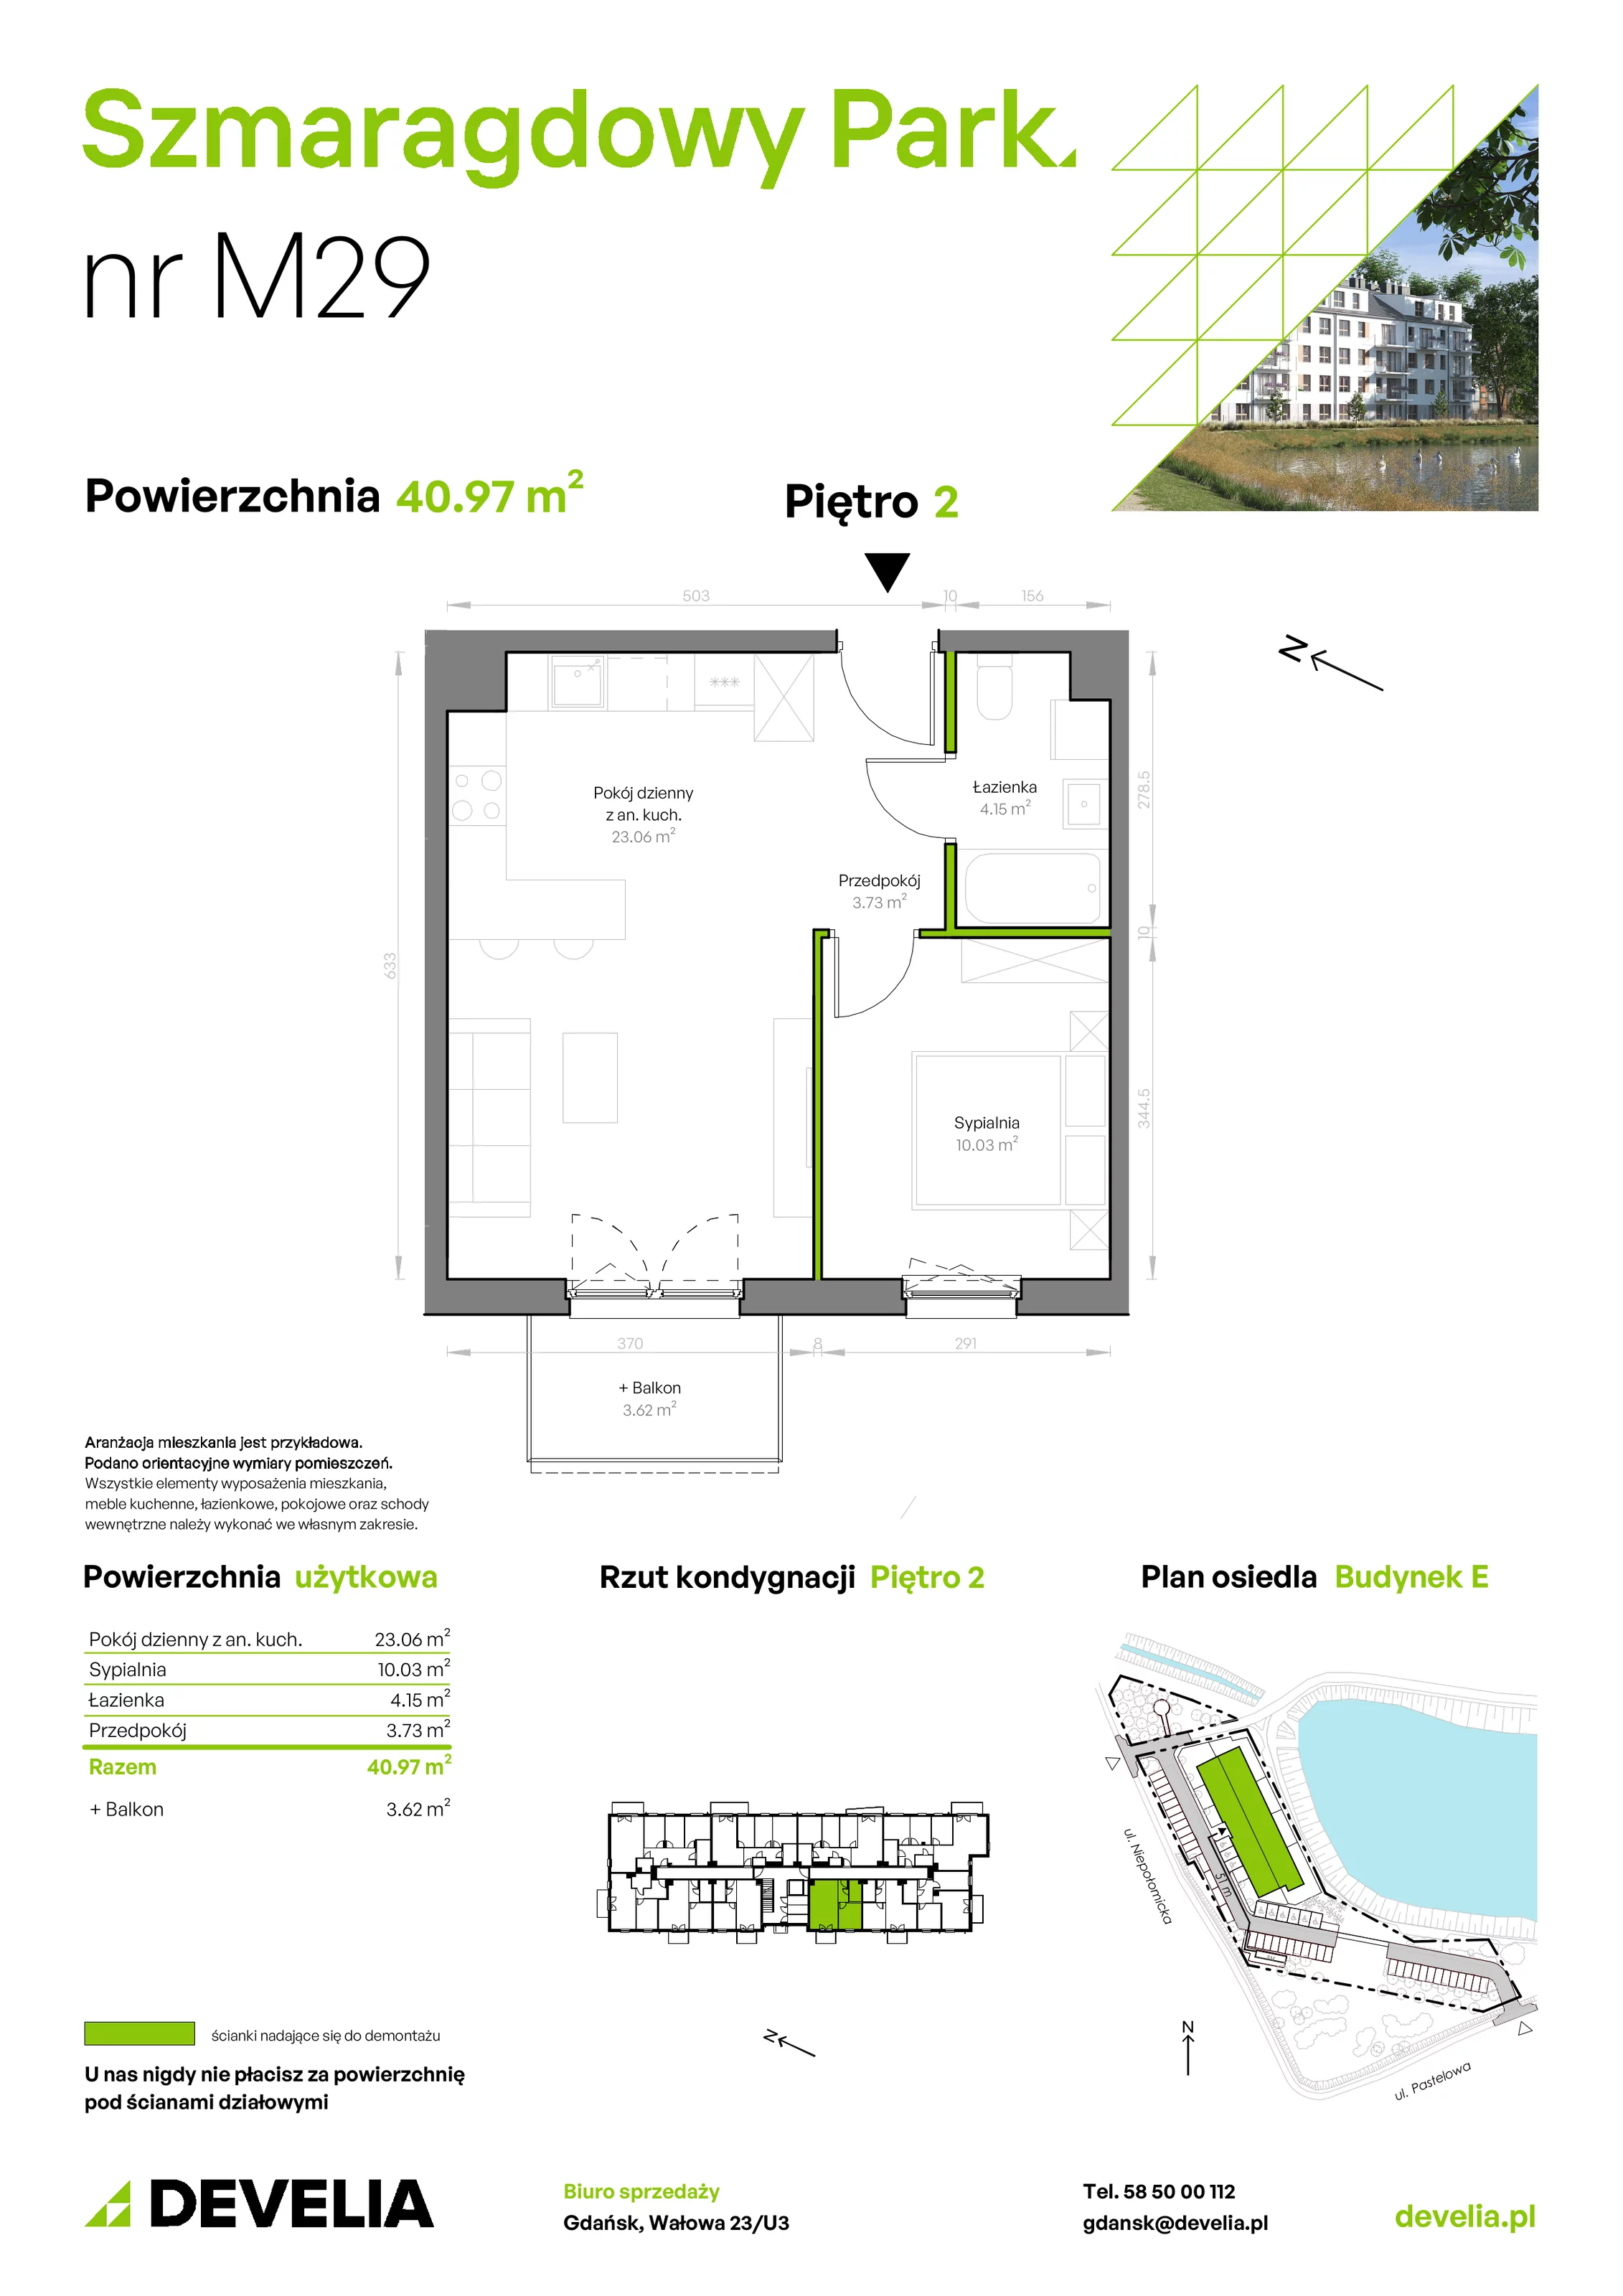 Mieszkanie 40,97 m², piętro 2, oferta nr E/029, Szmaragdowy Park, Gdańsk, Orunia Górna-Gdańsk Południe, Łostowice, ul. Topazowa 2